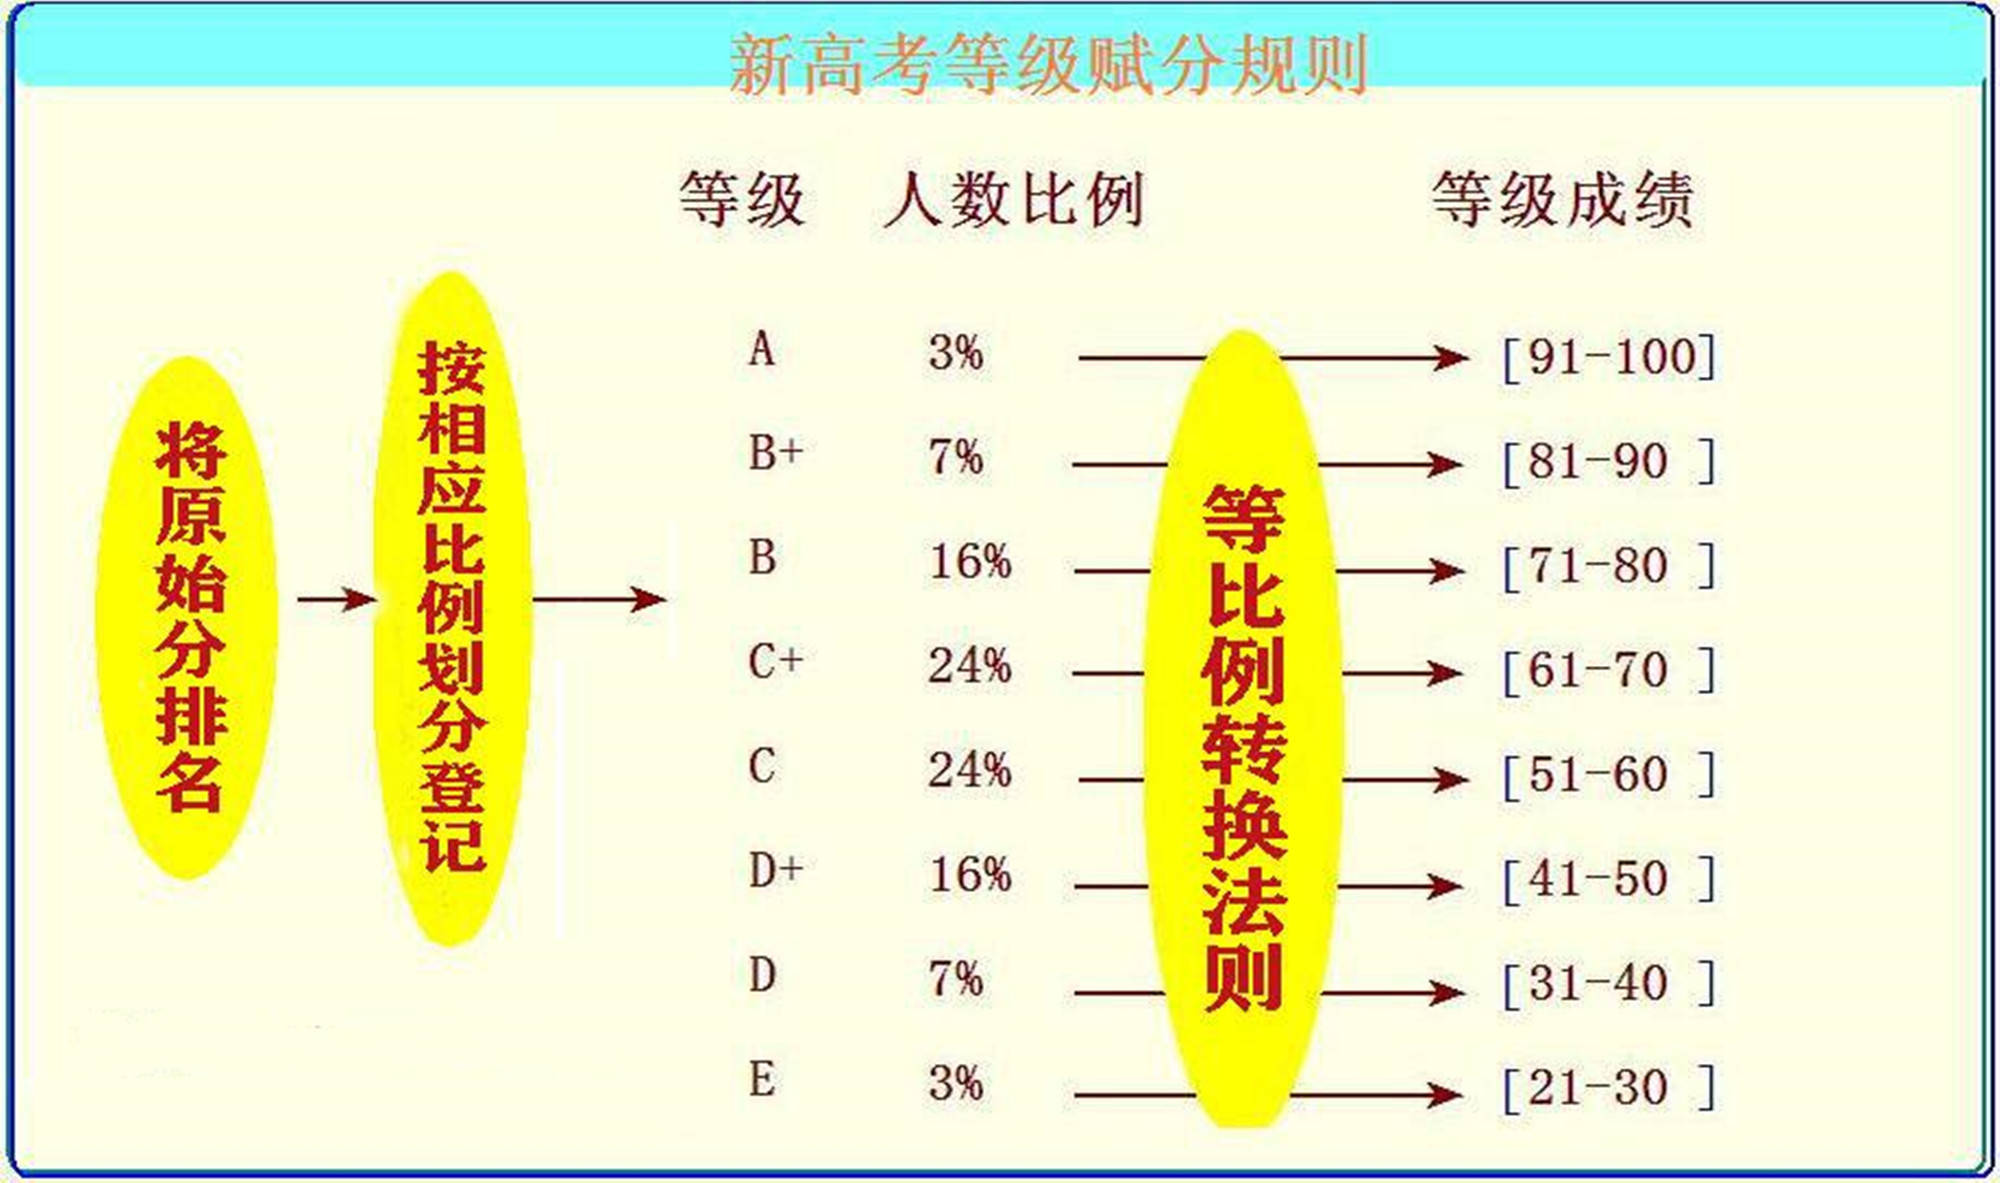 天津700分以上考生343人,占比0.63%,高分背后和等级赋